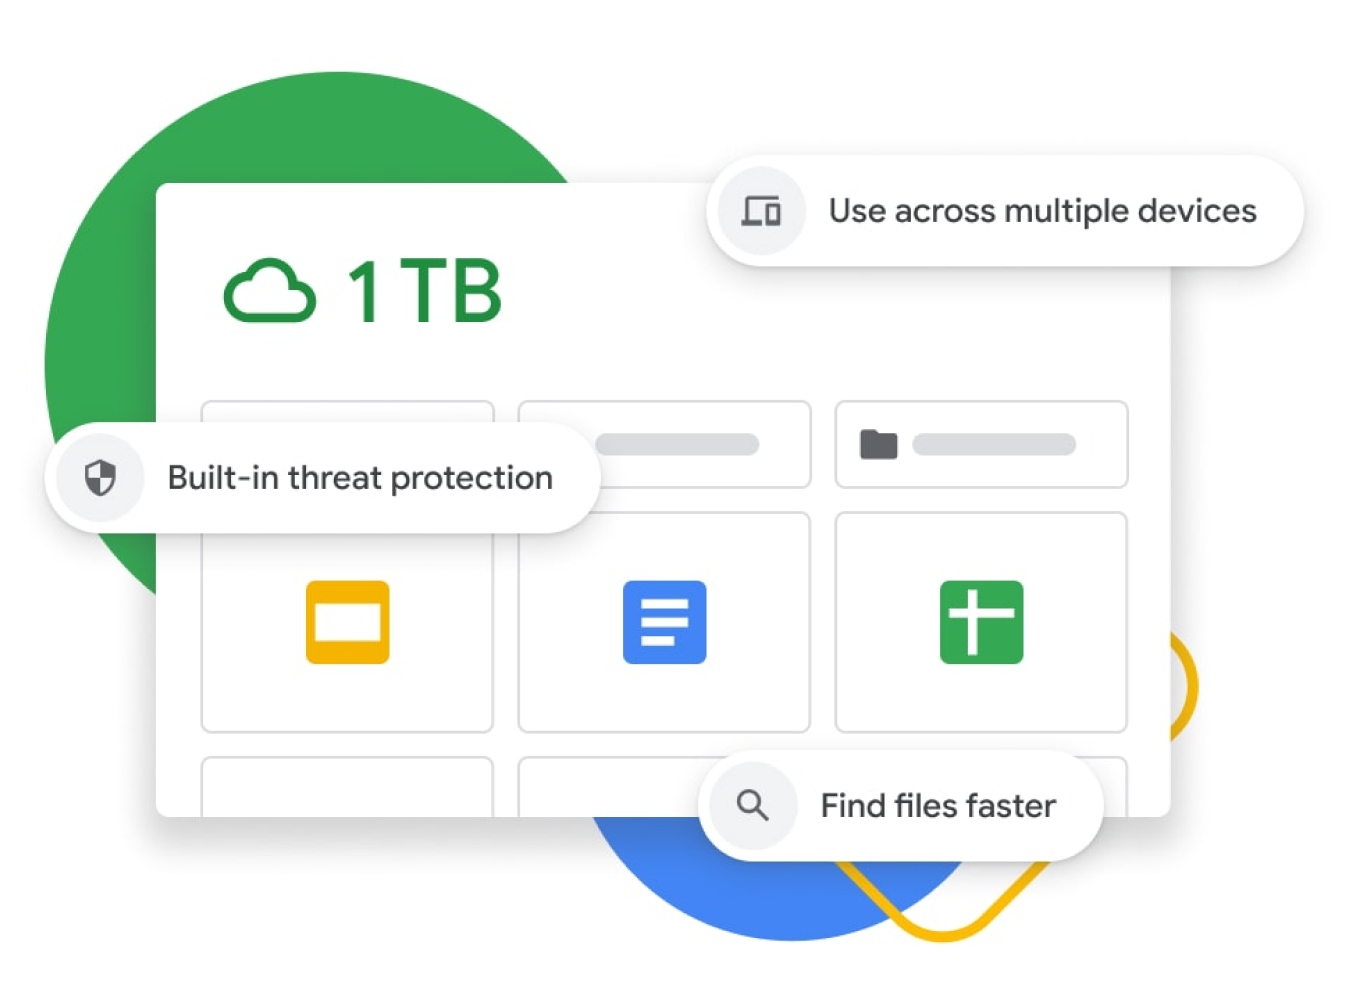 Hình minh hoạ một trang tổng quan trong Google Drive, trong đó có bộ nhớ 1 TB, cơ chế bảo vệ tích hợp sẵn chống lại mối đe doạ, tính năng đồng bộ hoá nhiều thiết bị và các tính năng tìm kiếm nâng cao. 